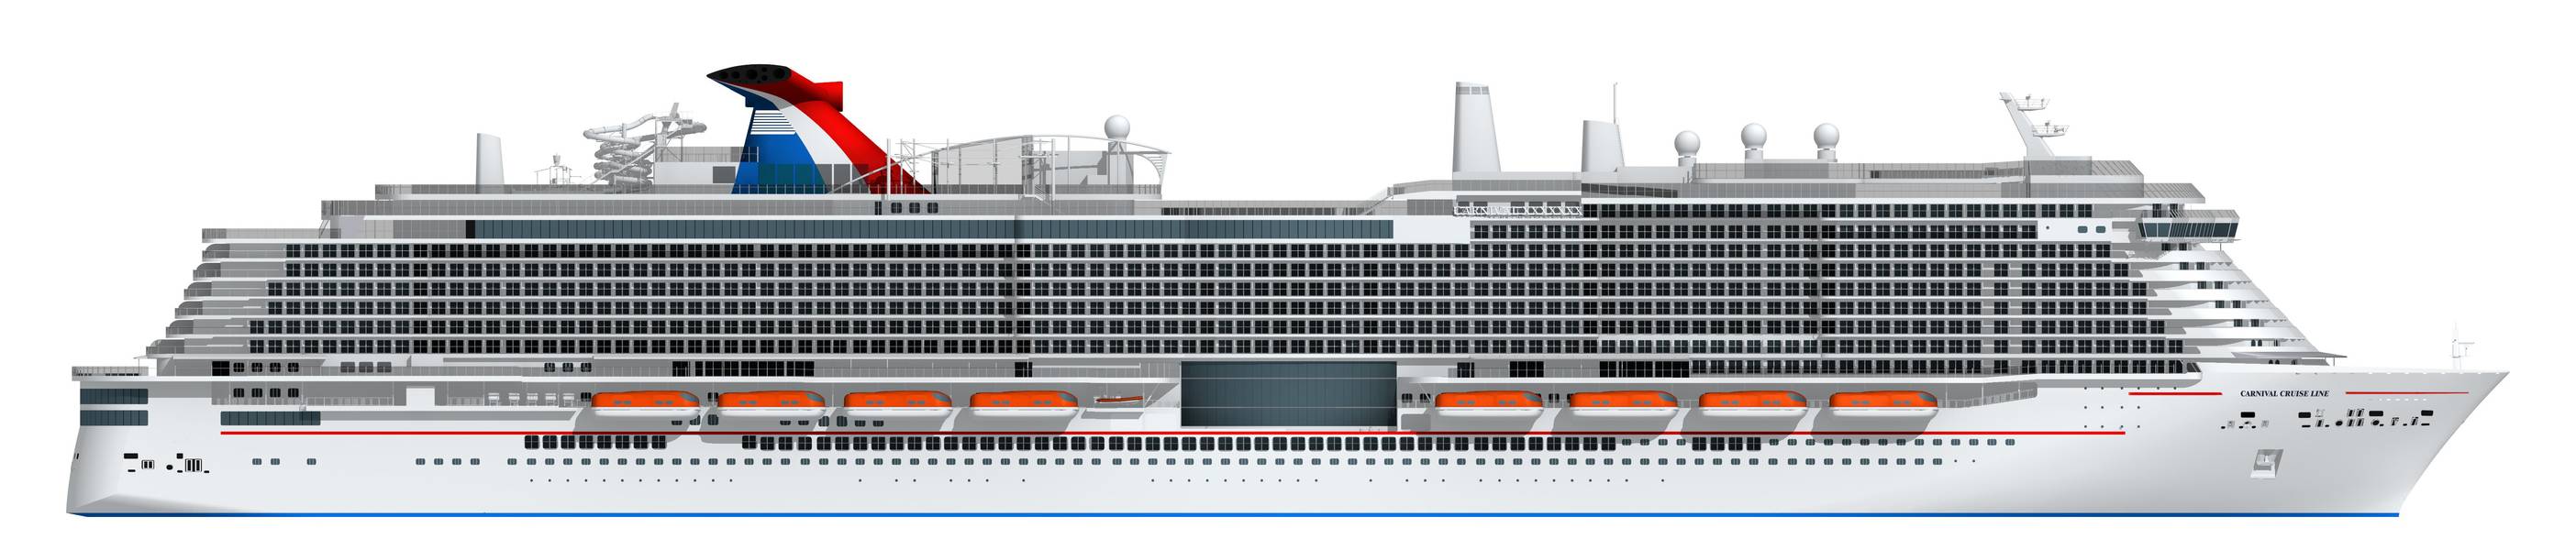 嘉年华新的18万吨级船舶由LNG提供动力的艺术家渲染（图片：嘉年华游轮）